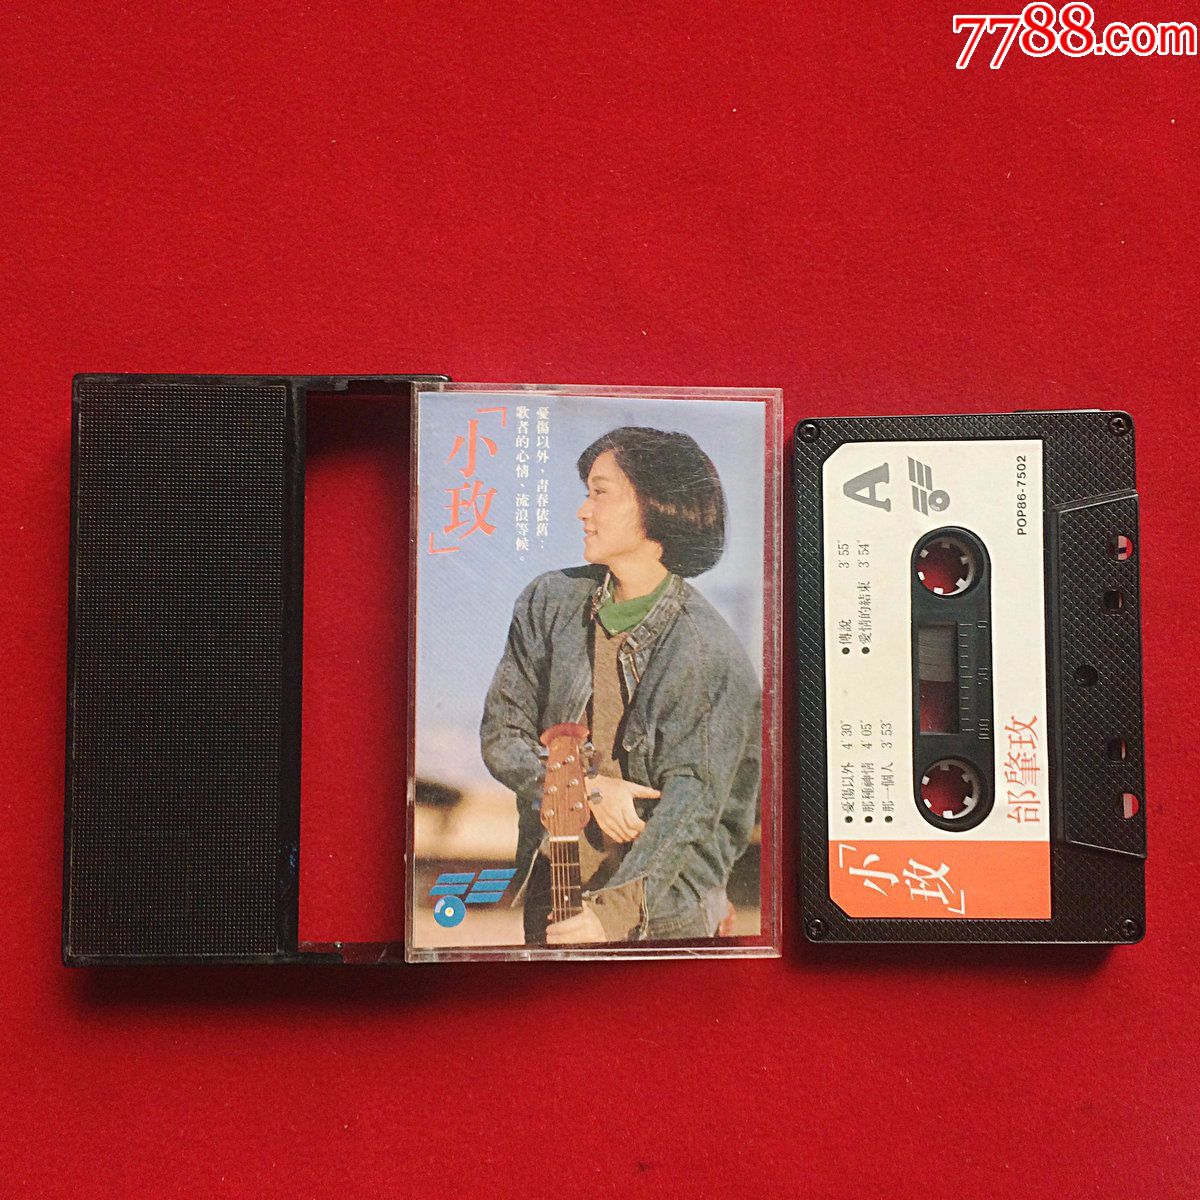 台湾本土磁带,邰肇玫,小玫,忧伤以外,稀有动听的专辑